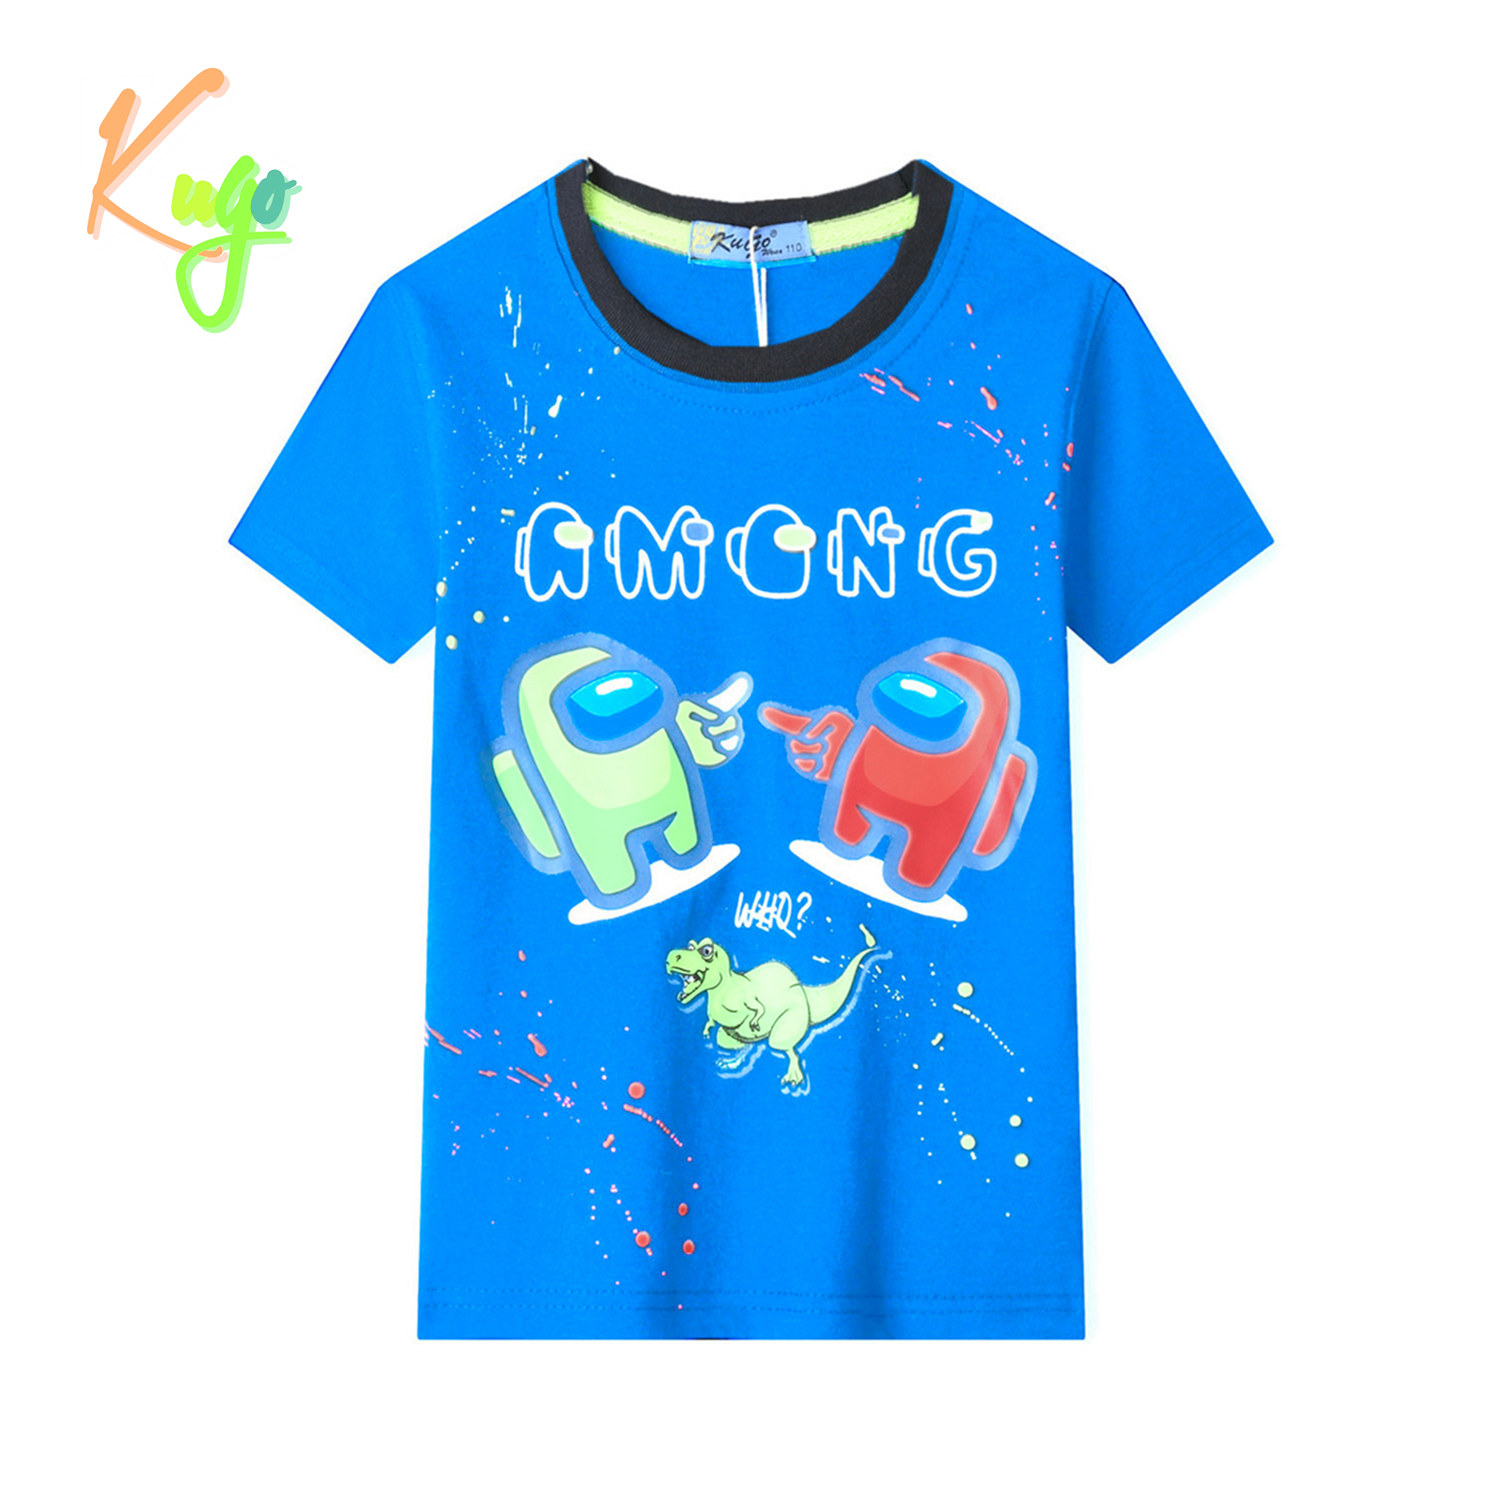 Chlapecké tričko - KUGO TM9202, tyrkysová Barva: Tyrkysová, Velikost: 98